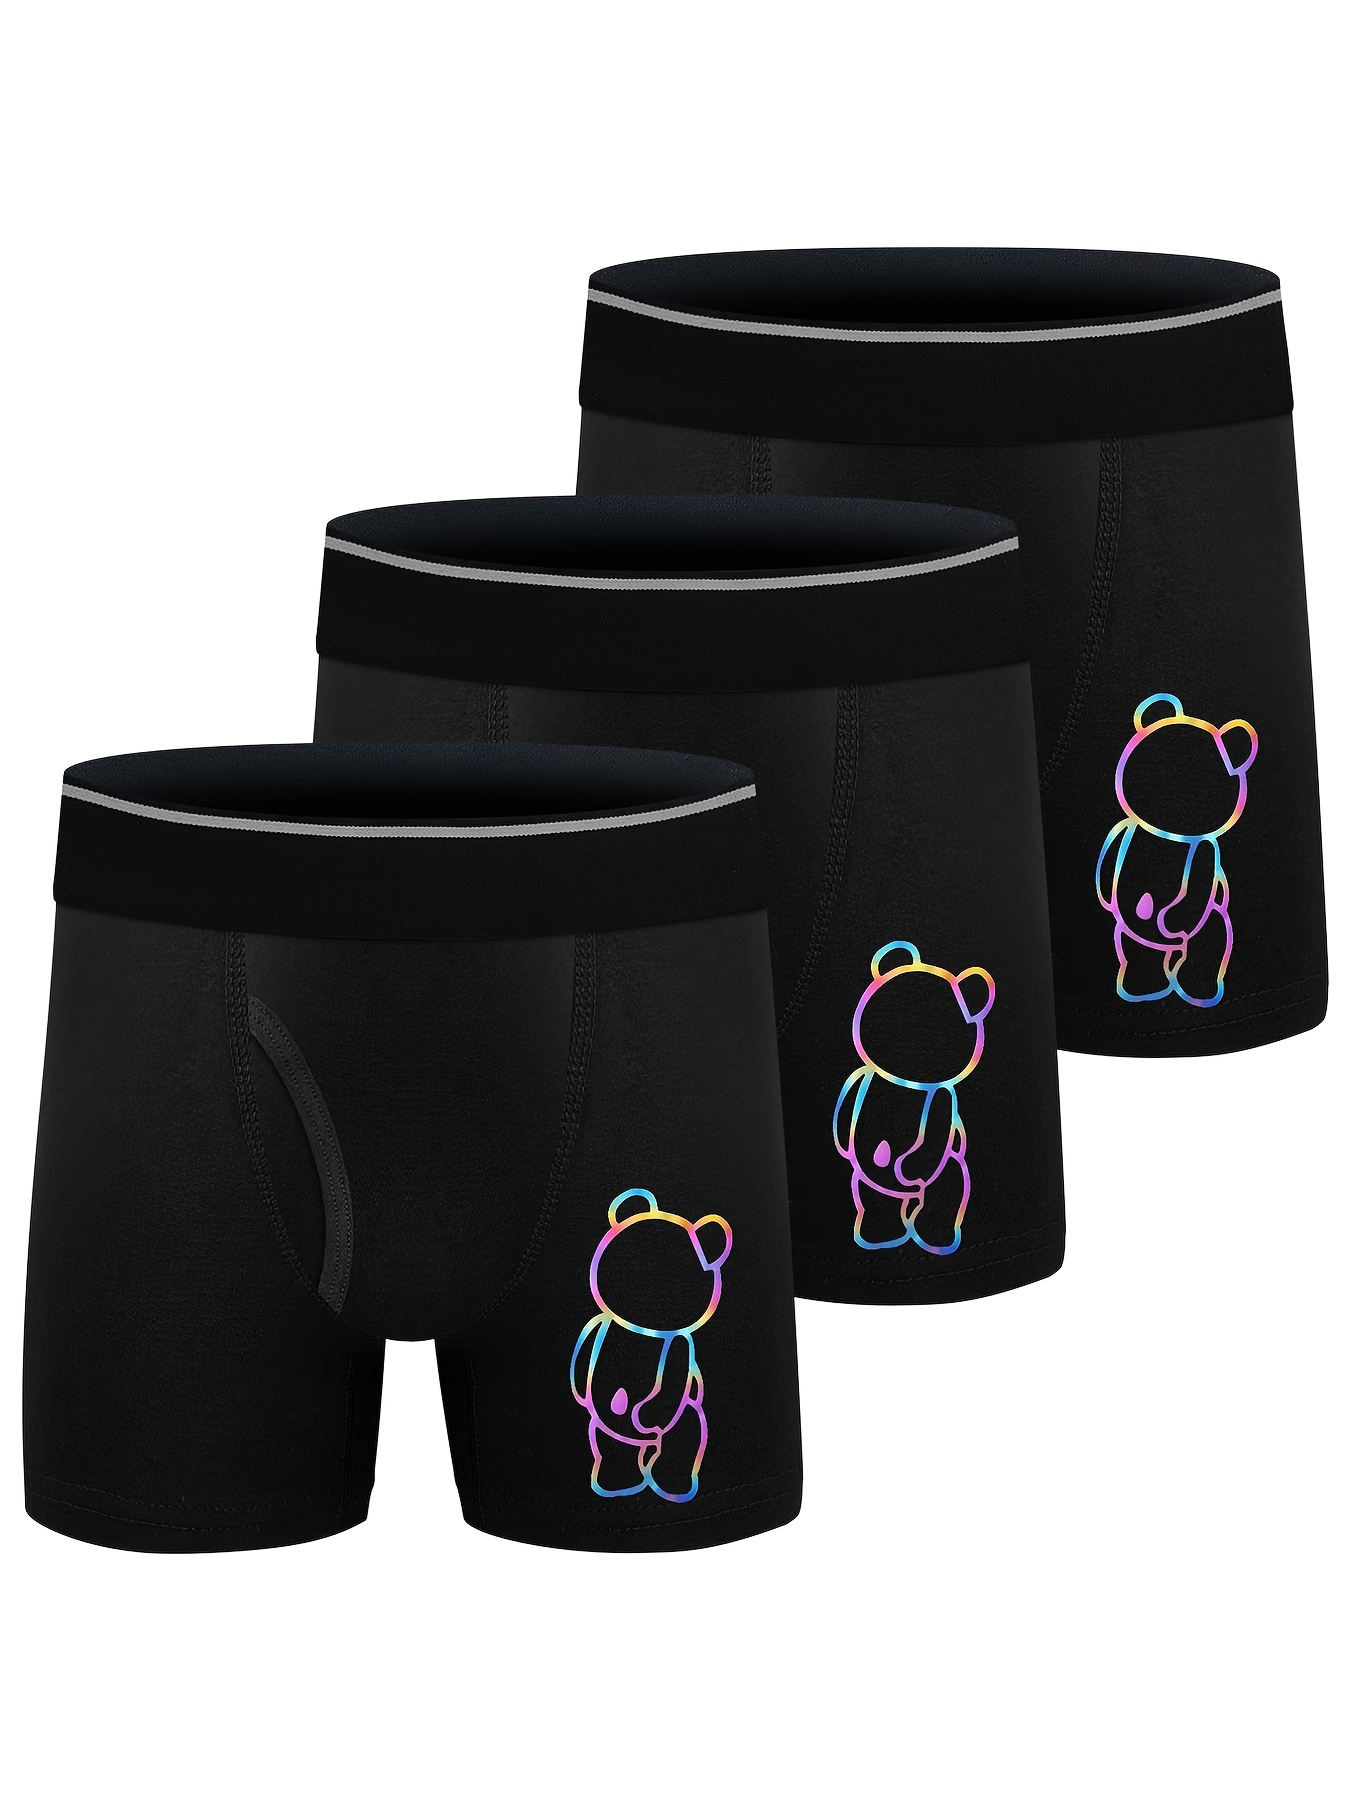 10PCS/Lot Boy Boxers Mixed Designs Children Underwear Size 3T-20T Teen Boy  Cotton UnderPanties Soft